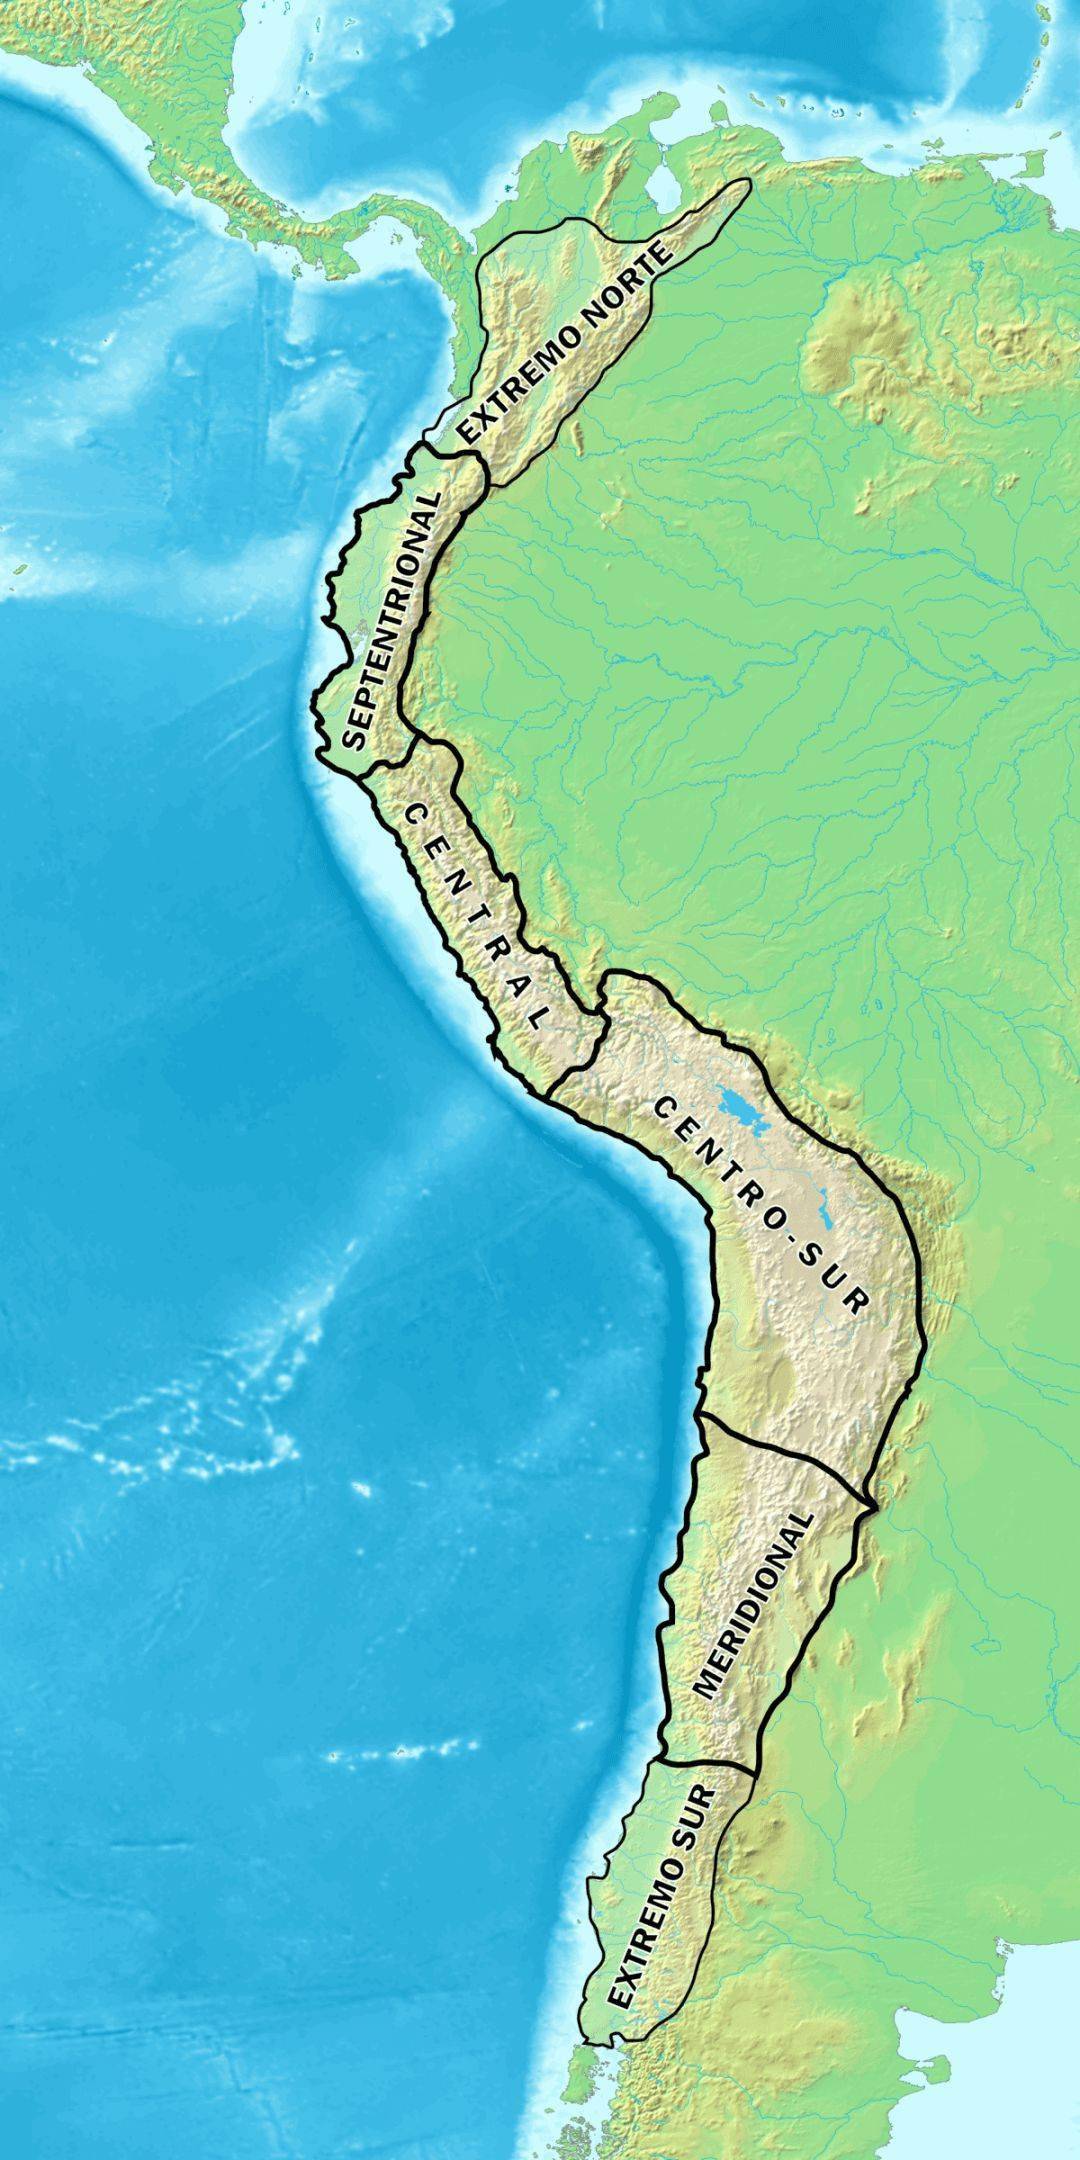 安第斯山脉是一个极其复杂的山脉,沿着南美大陆的西部边缘延伸,好似一